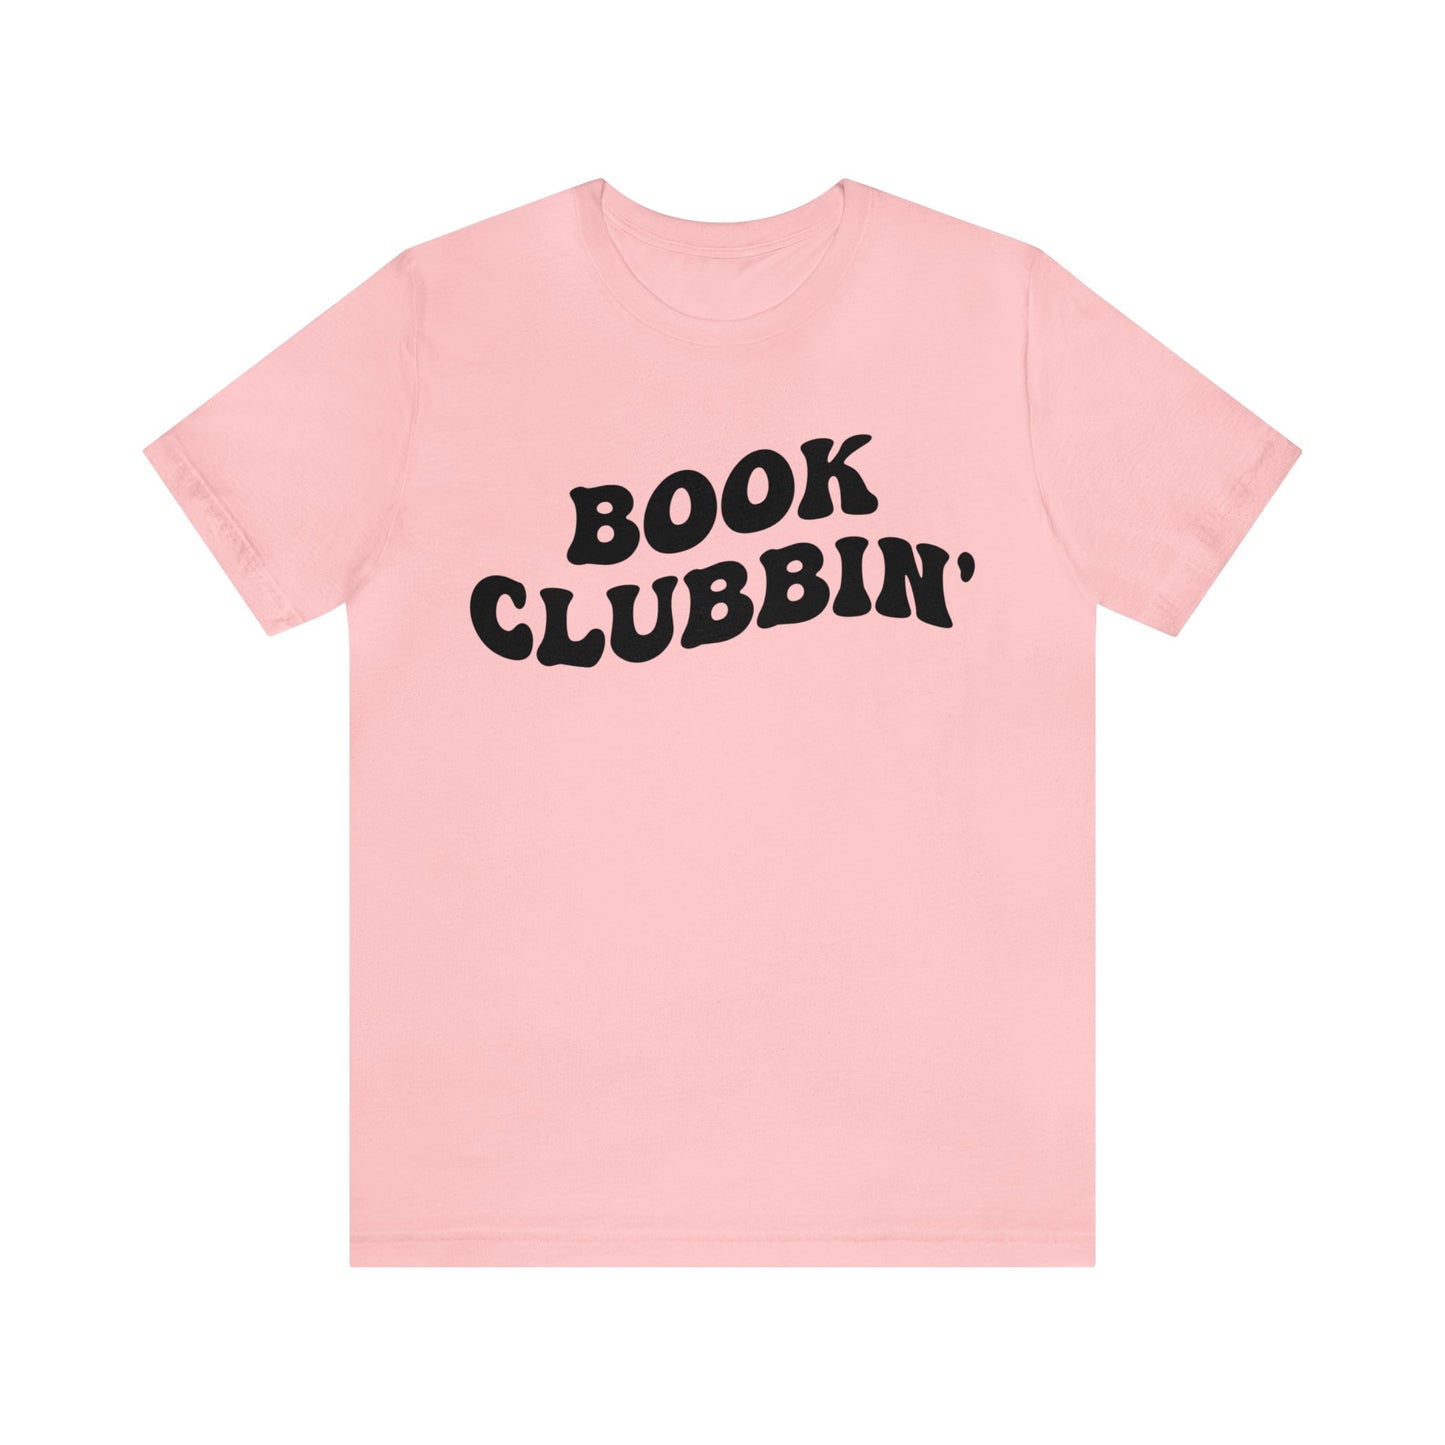 Book Clubbin' Shirt, Librarian Shirt for Bibliophile, Shirt for Teacher, Book Lovers Club Shirt, Book Nerd Shirt, Bookworm Gift, T1170